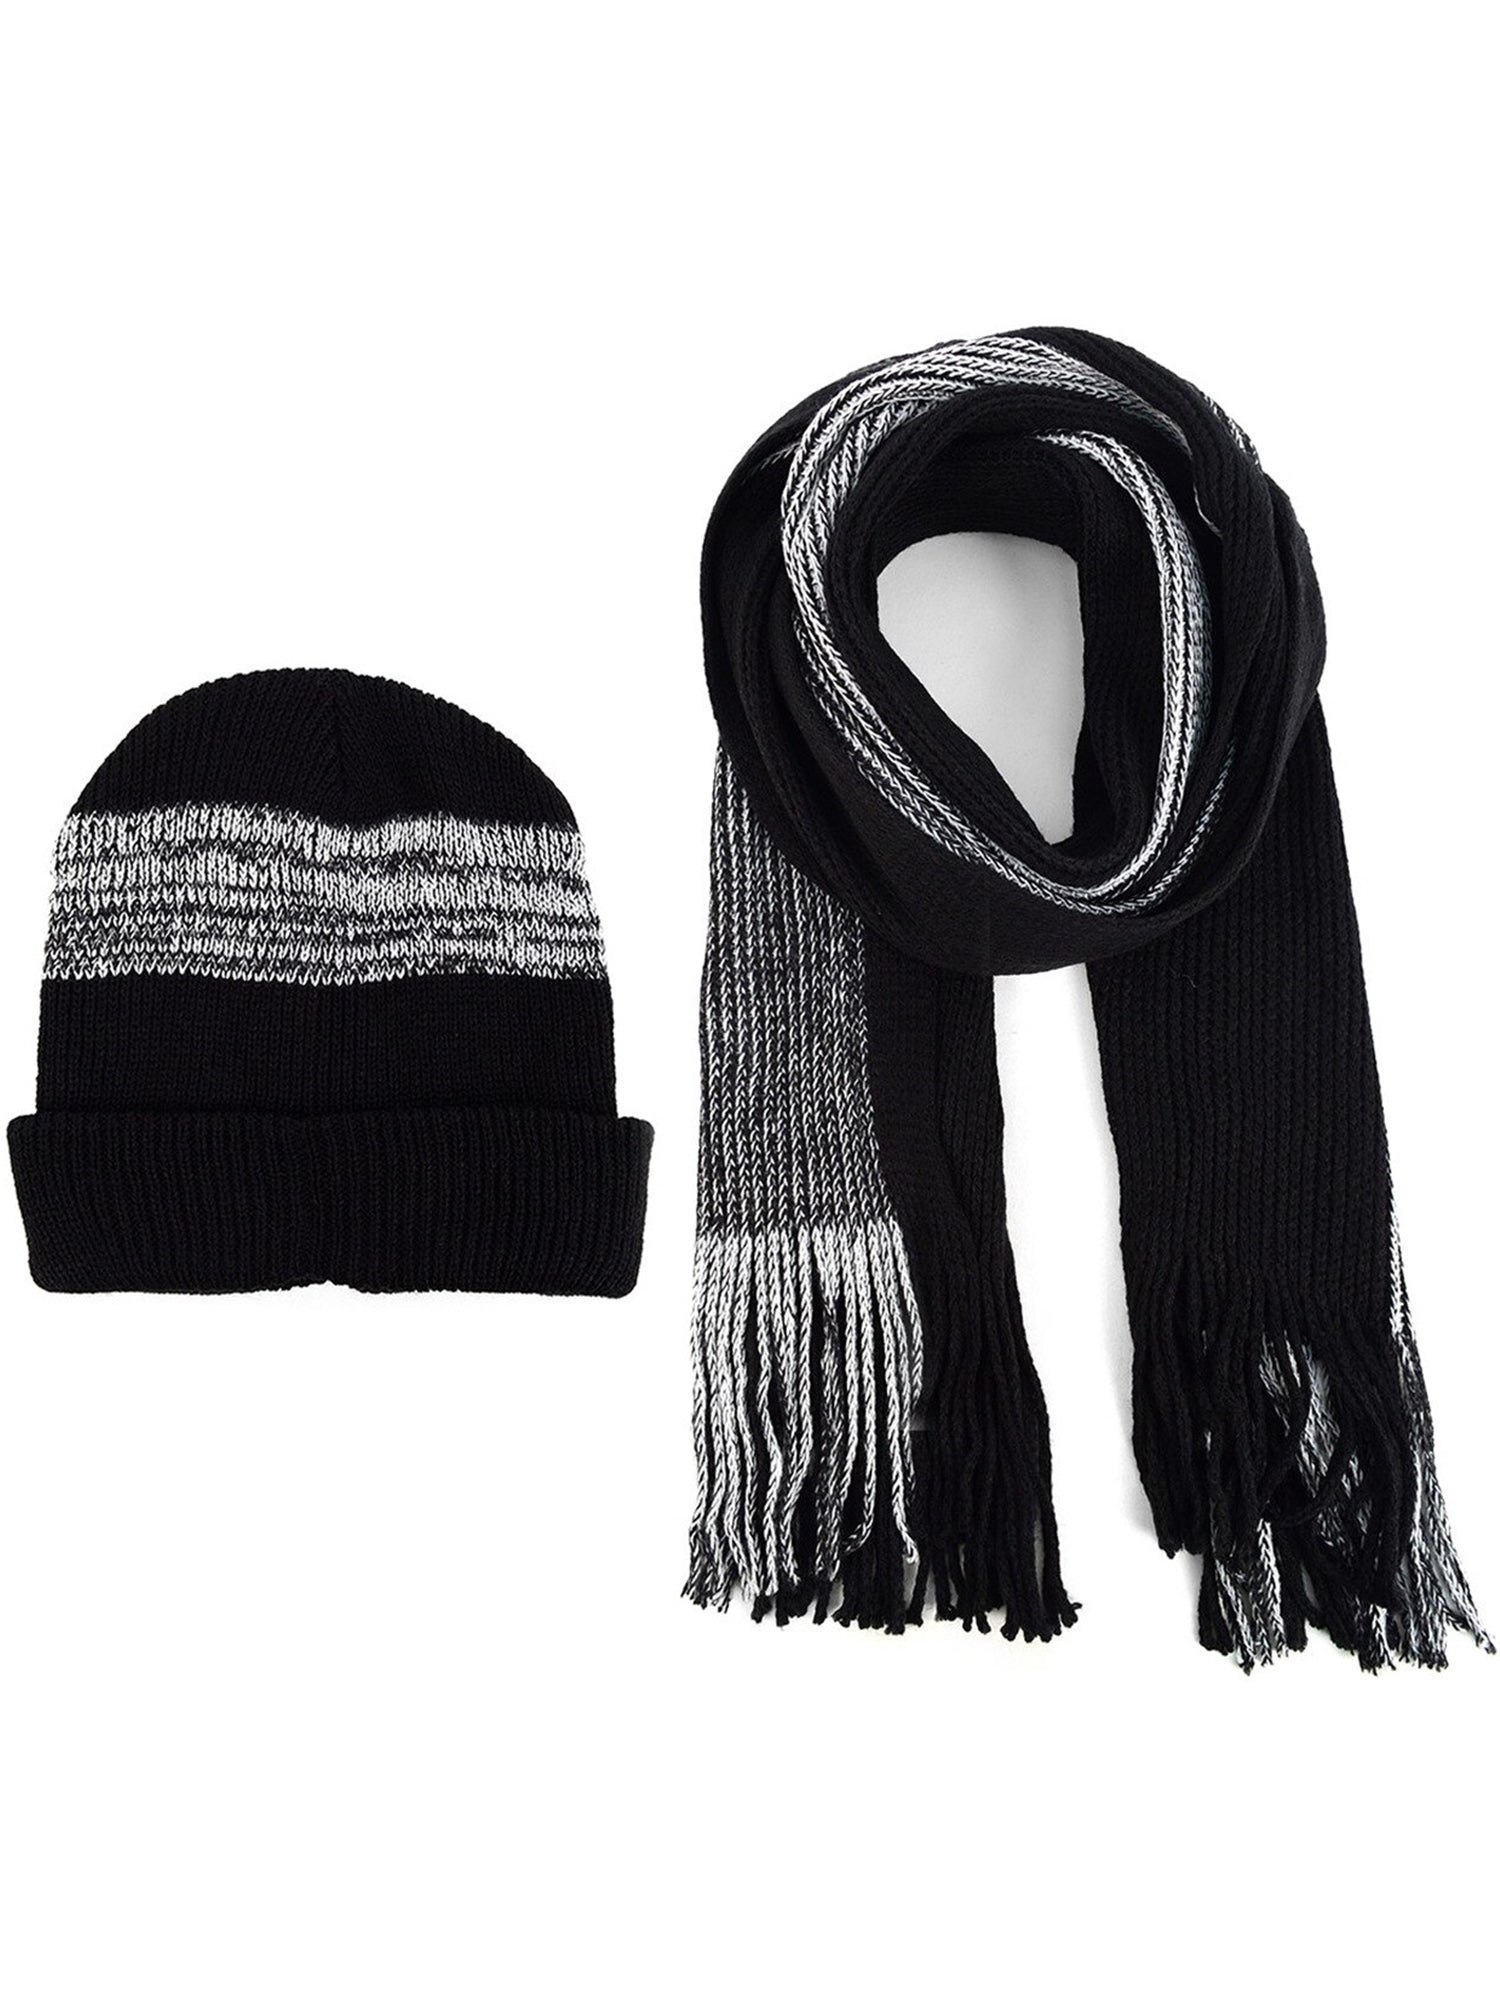 Men's Acrylic Knit Scarf and Hat Set Winter Set Umo Lorenzo Black One Size 